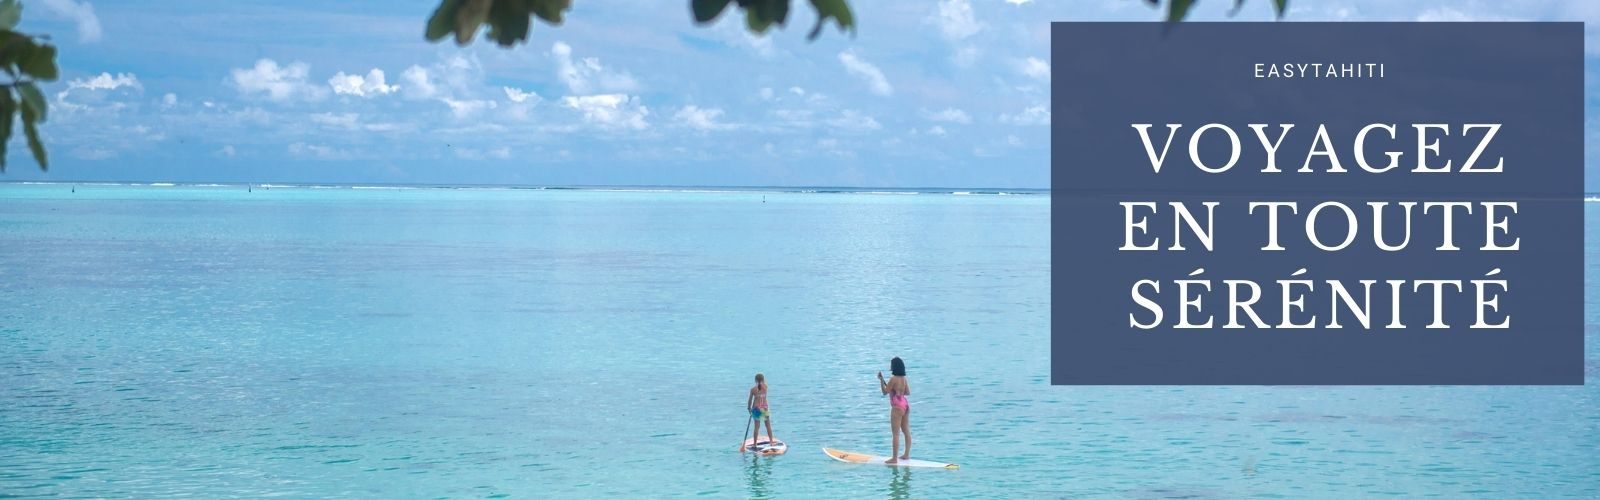 offre exclusive assurance annulation voyage en polynesie offerte